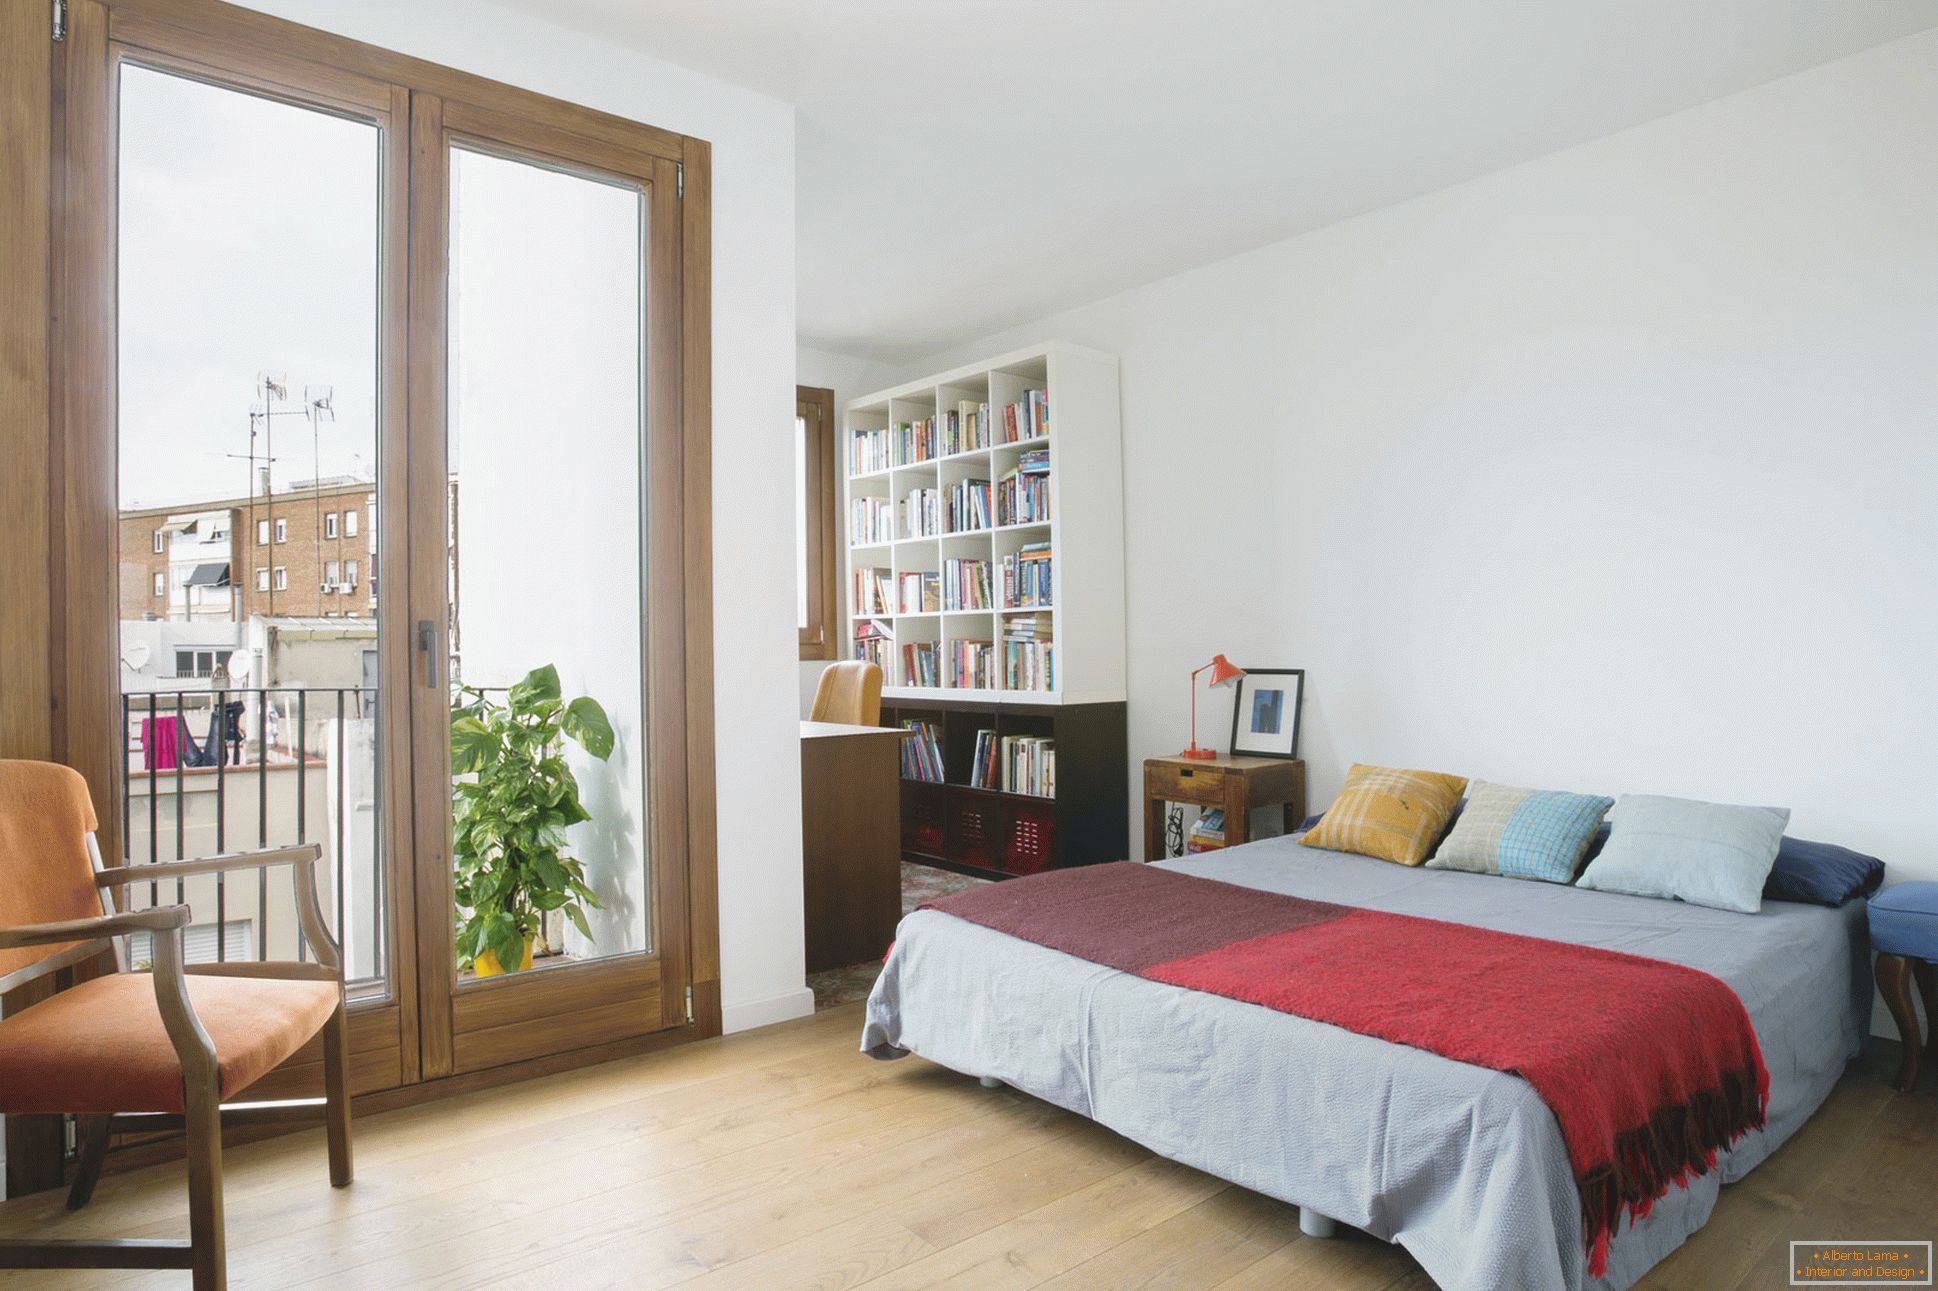 Dizajn enterijera malog stana u Barceloni